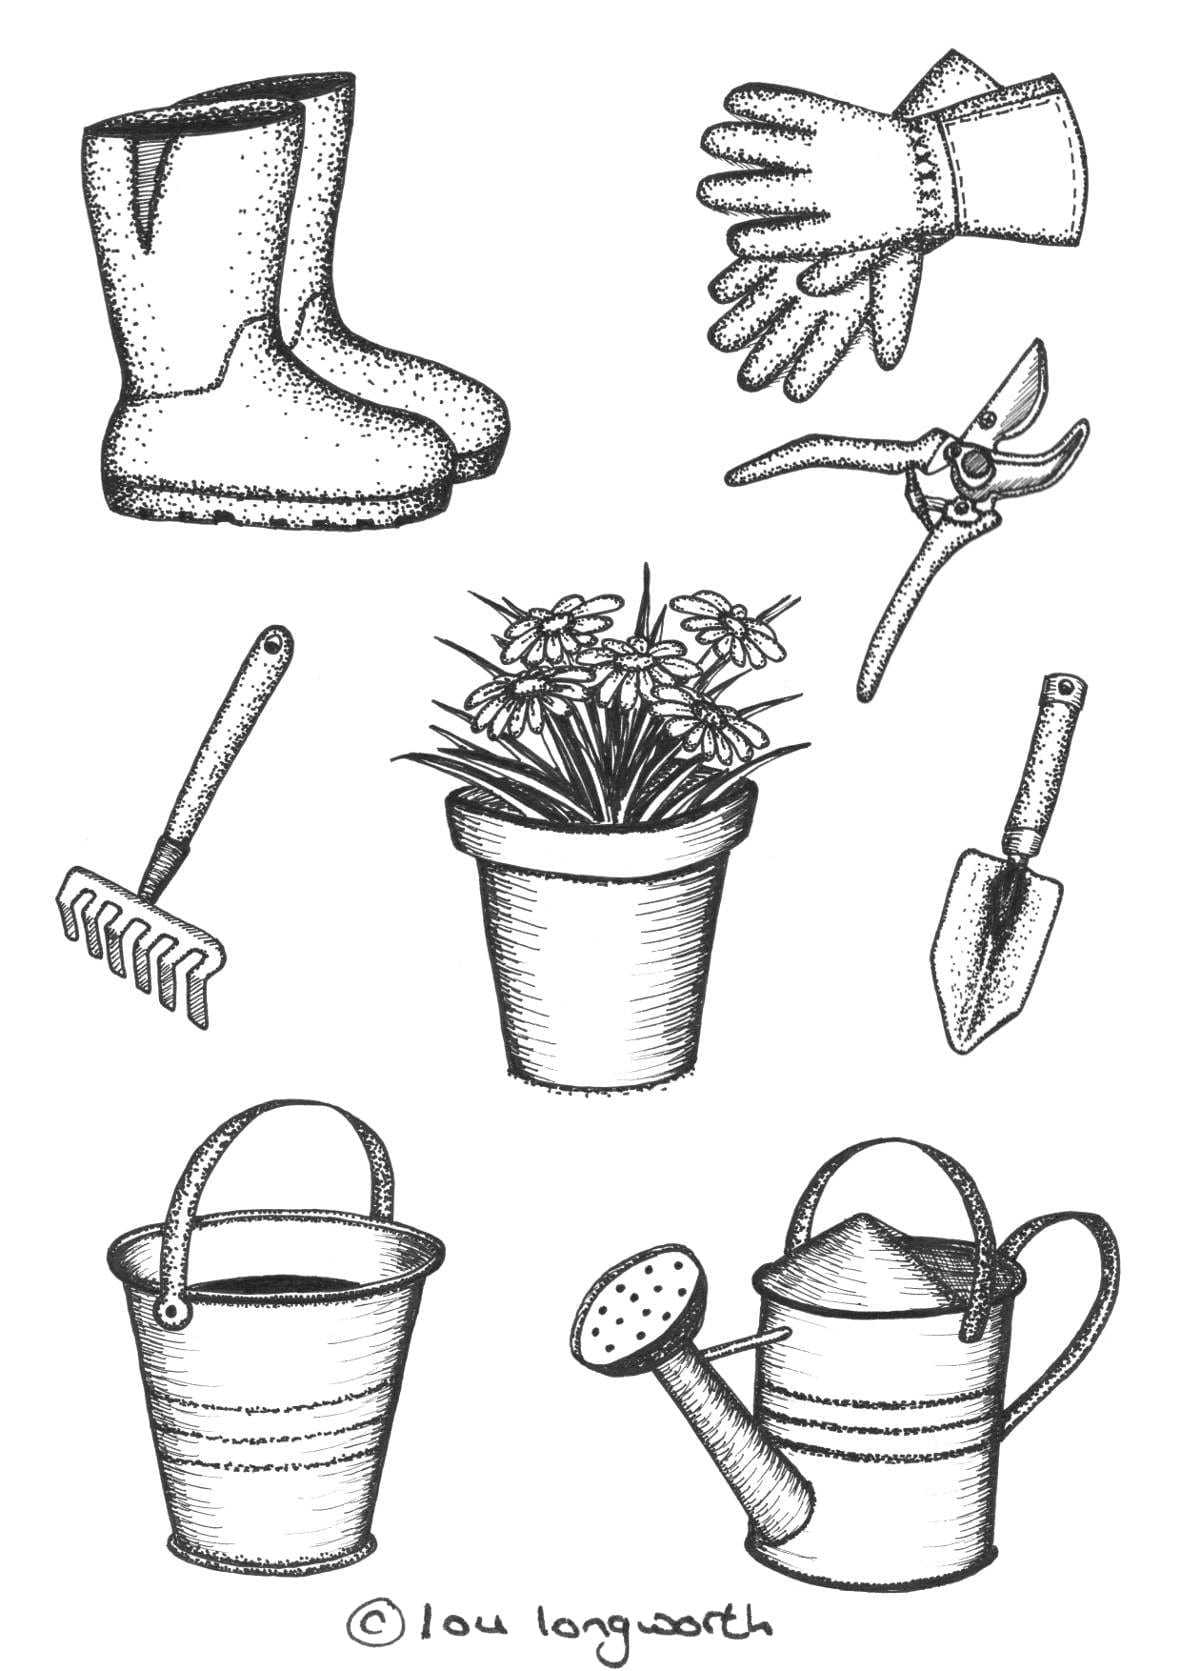 Garden themed illustrations